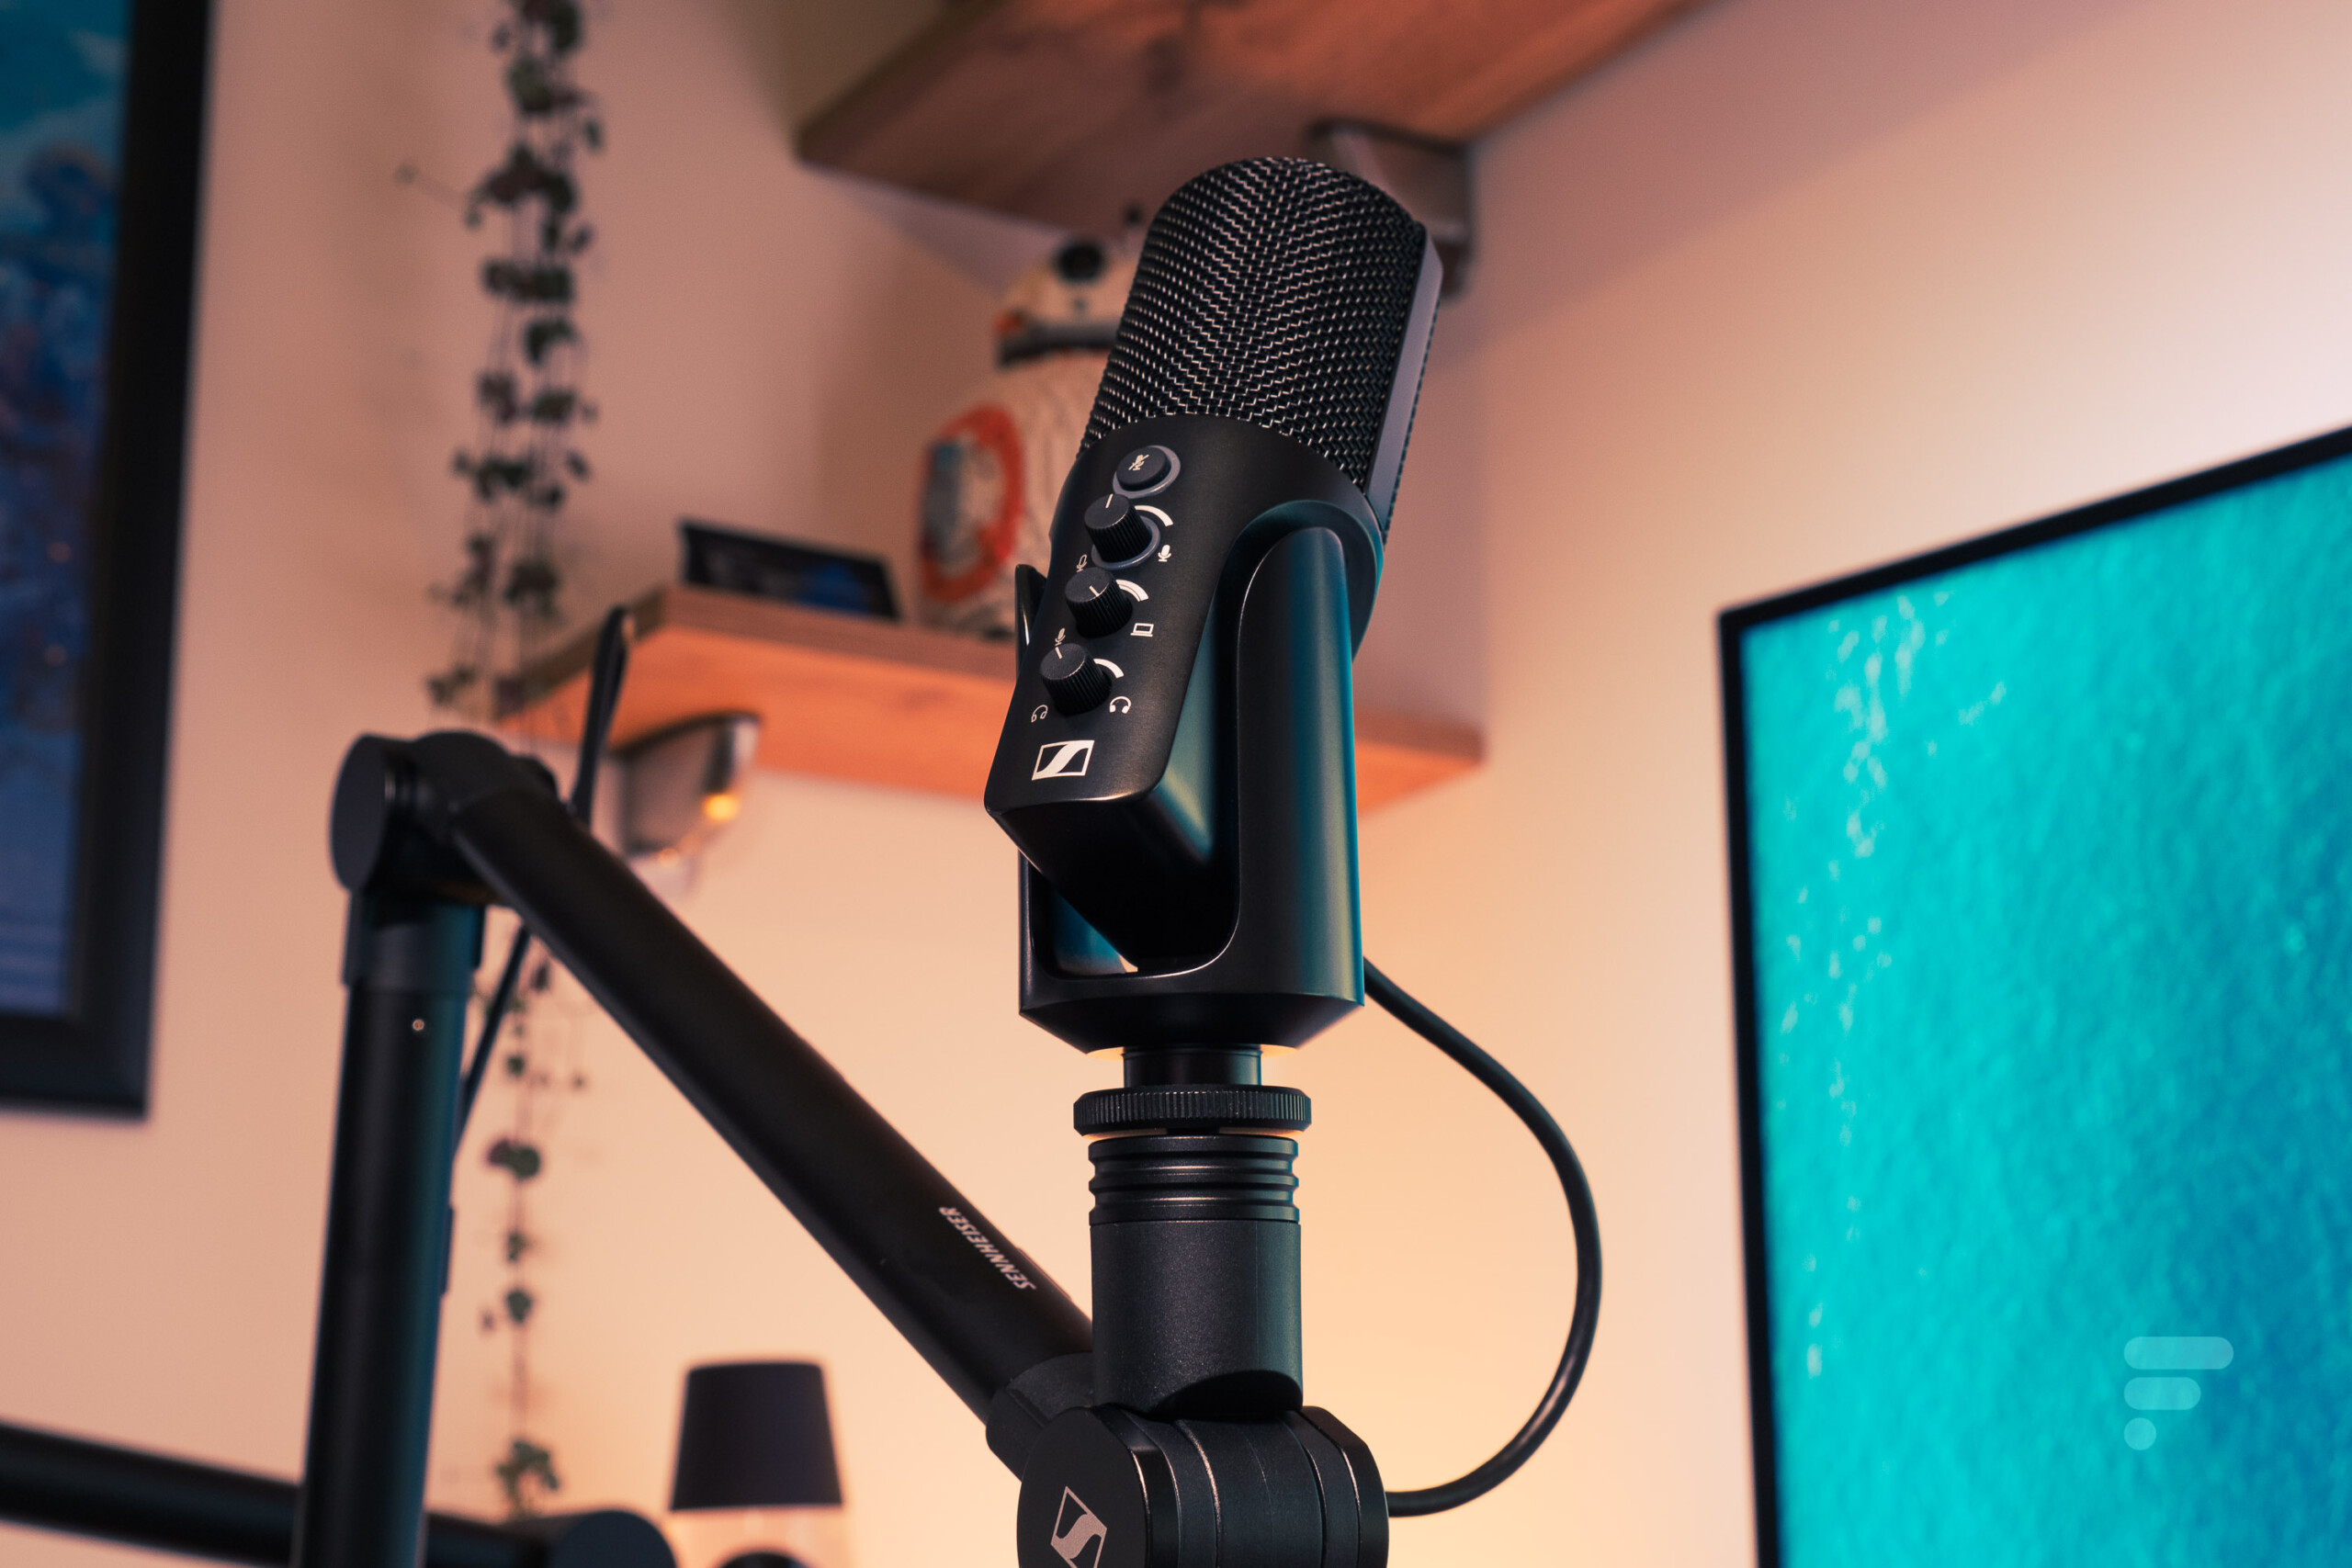 Microphone à condensateur USB pour PC. Haute qualité sonore